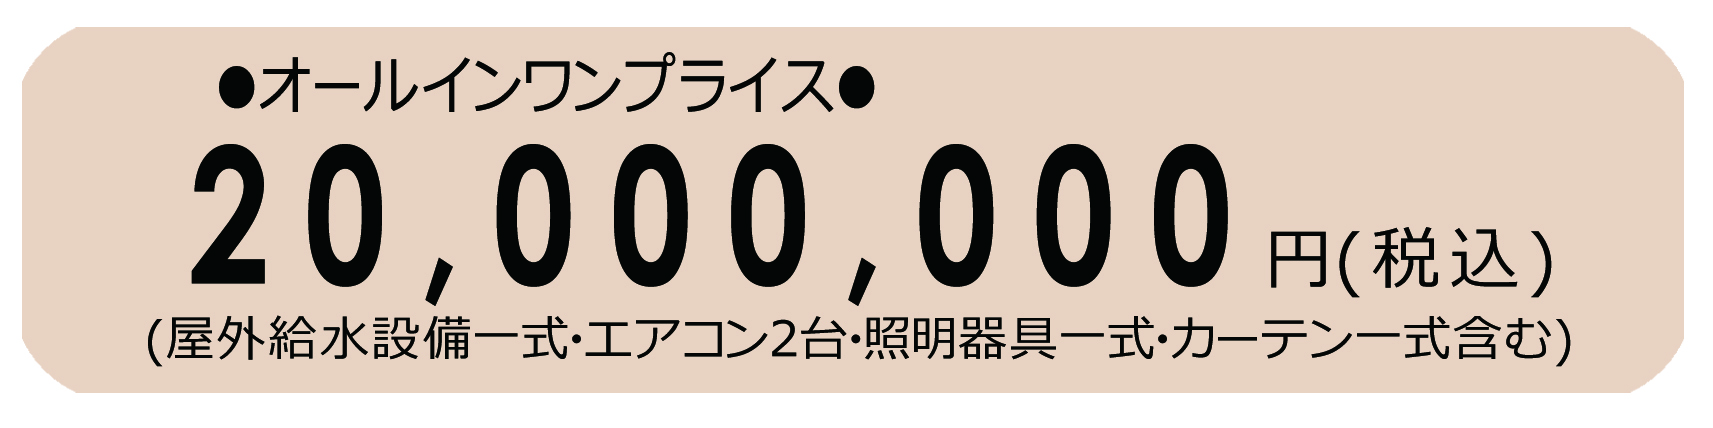 200000.jpg